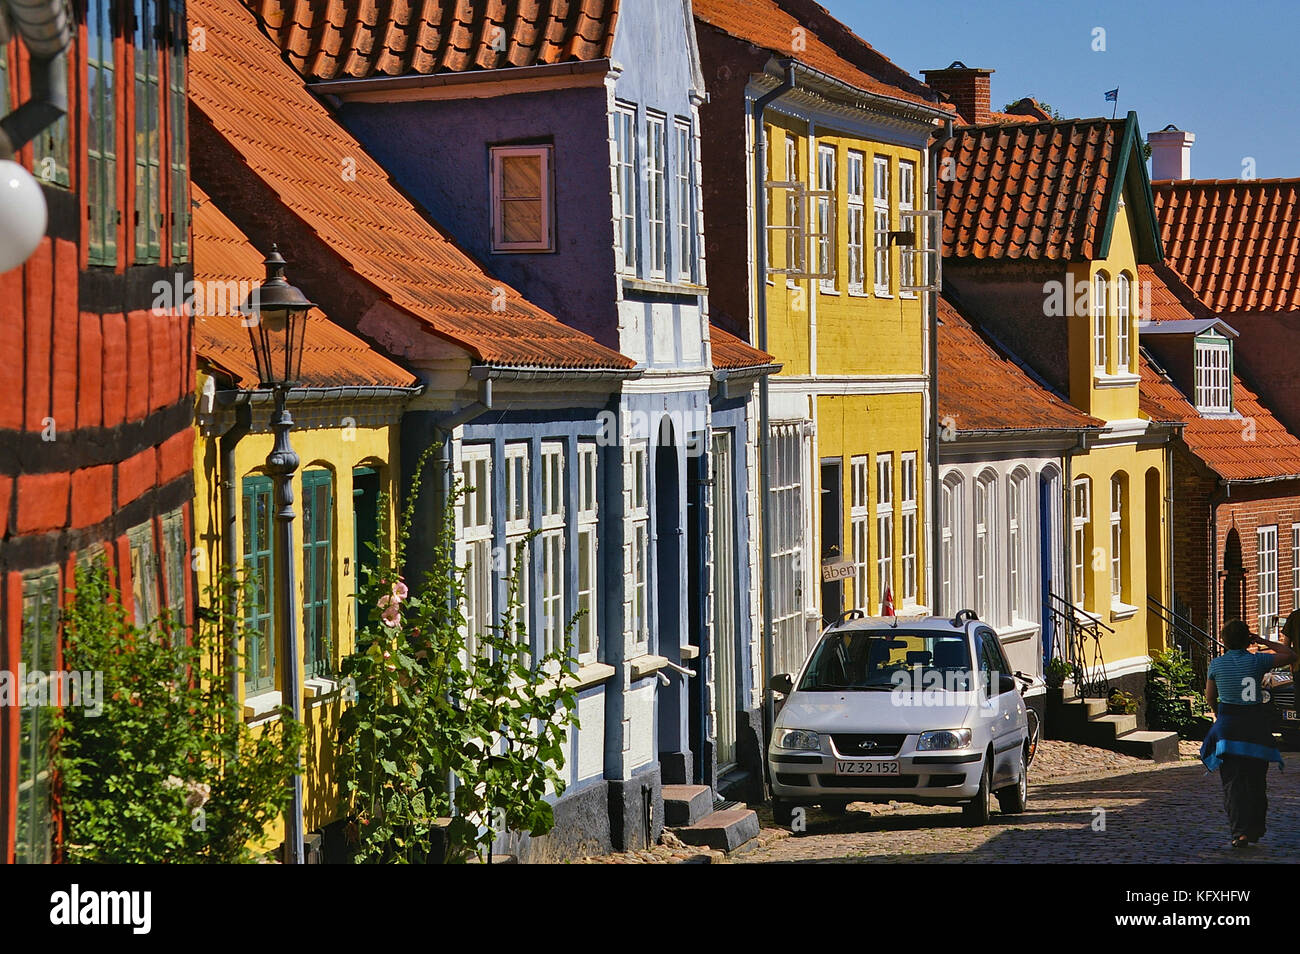 Aeroskobing, Dänemark - 4. Juli 2012 - schmale Kopfsteinpflasterstraße auf der Insel Aero mit bunten historischen Wohngebäuden, geparktem Auto, Pede Stockfoto